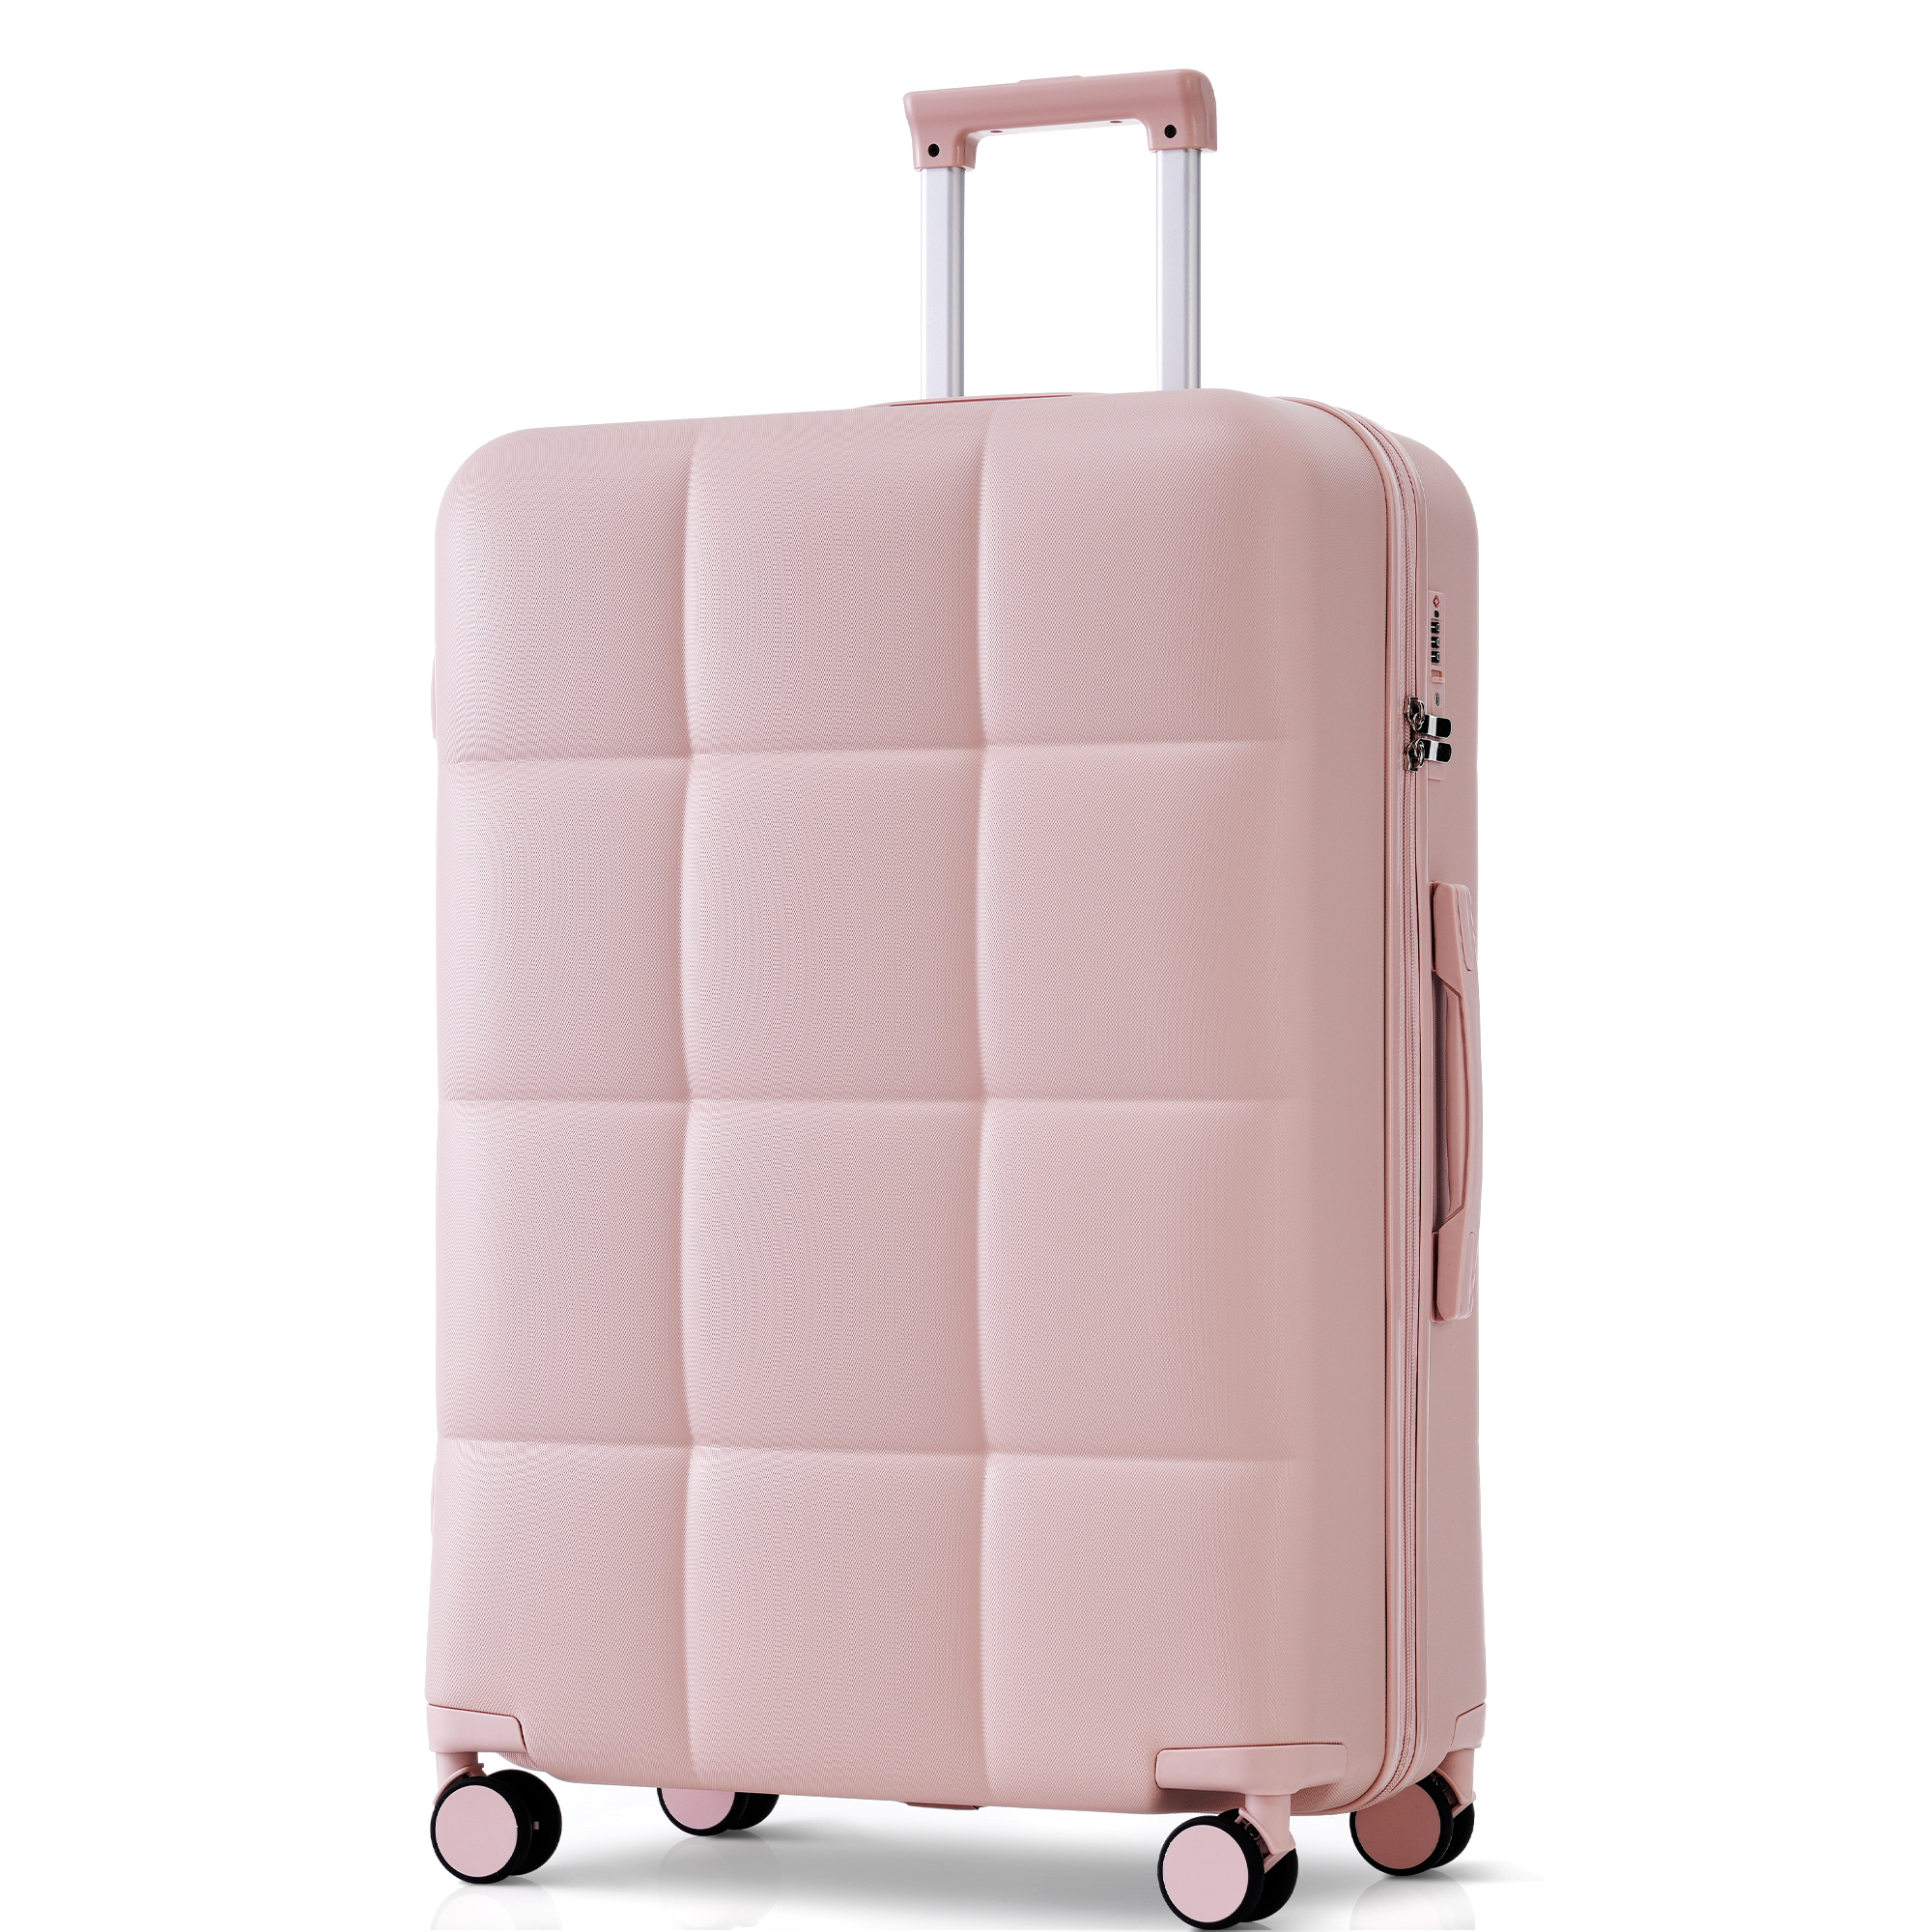 スーツケース Lサイズ 7-14日 軽量 キャリーケース 大型 フック搭載 キャリーバッグ ストッパー付き おしゃれ 女性 TANOBI